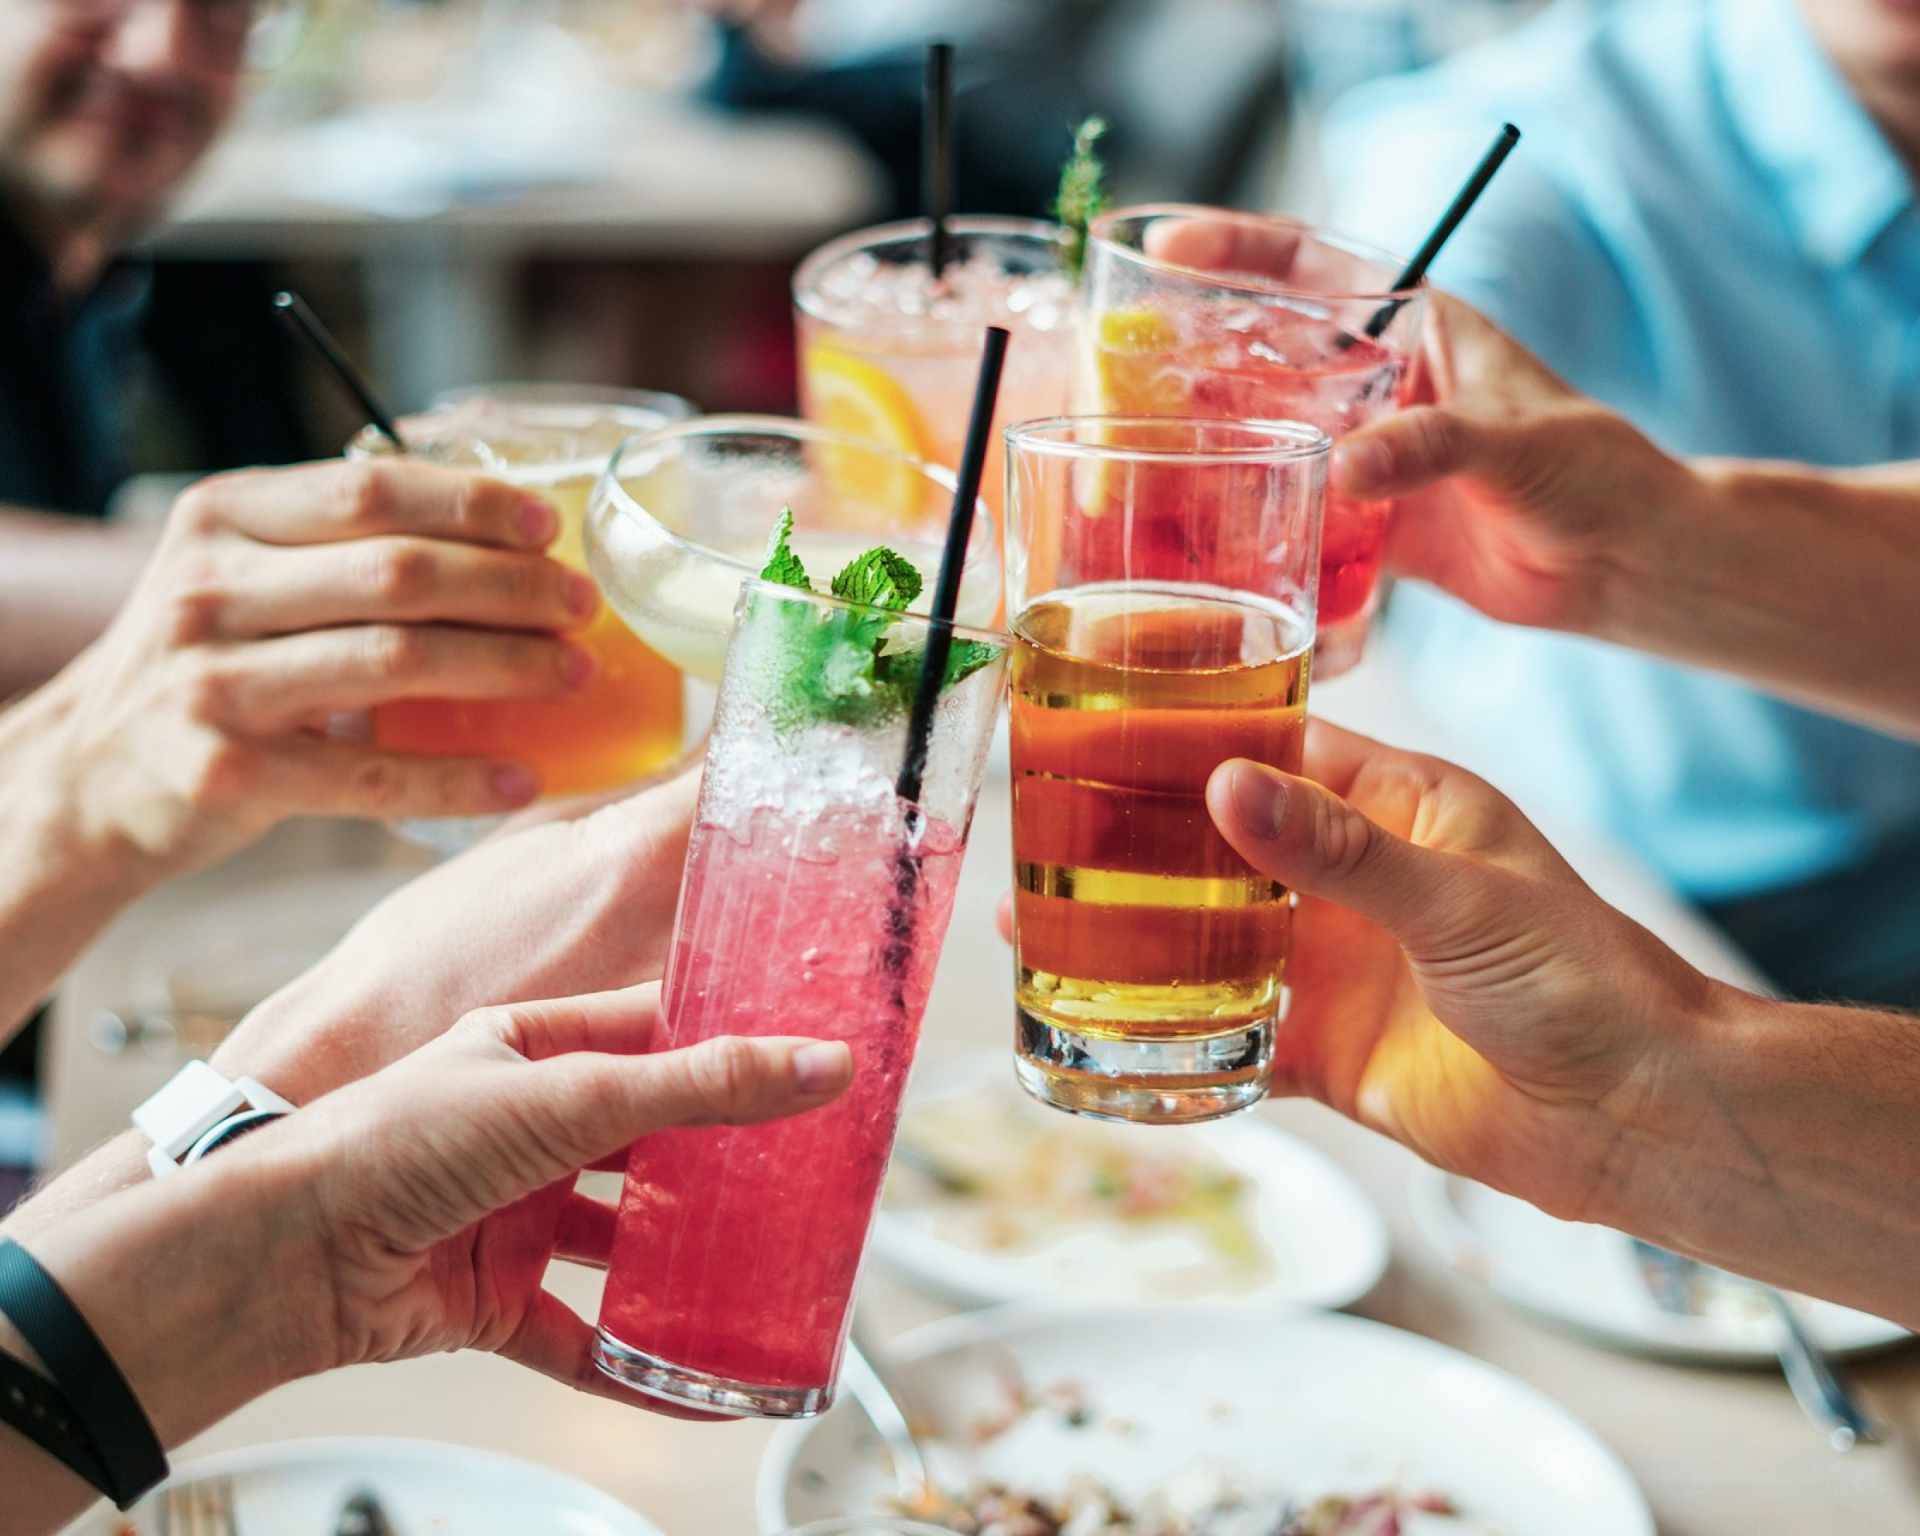 Ľudia držiaci v ruke rôzne alkoholické kokteily